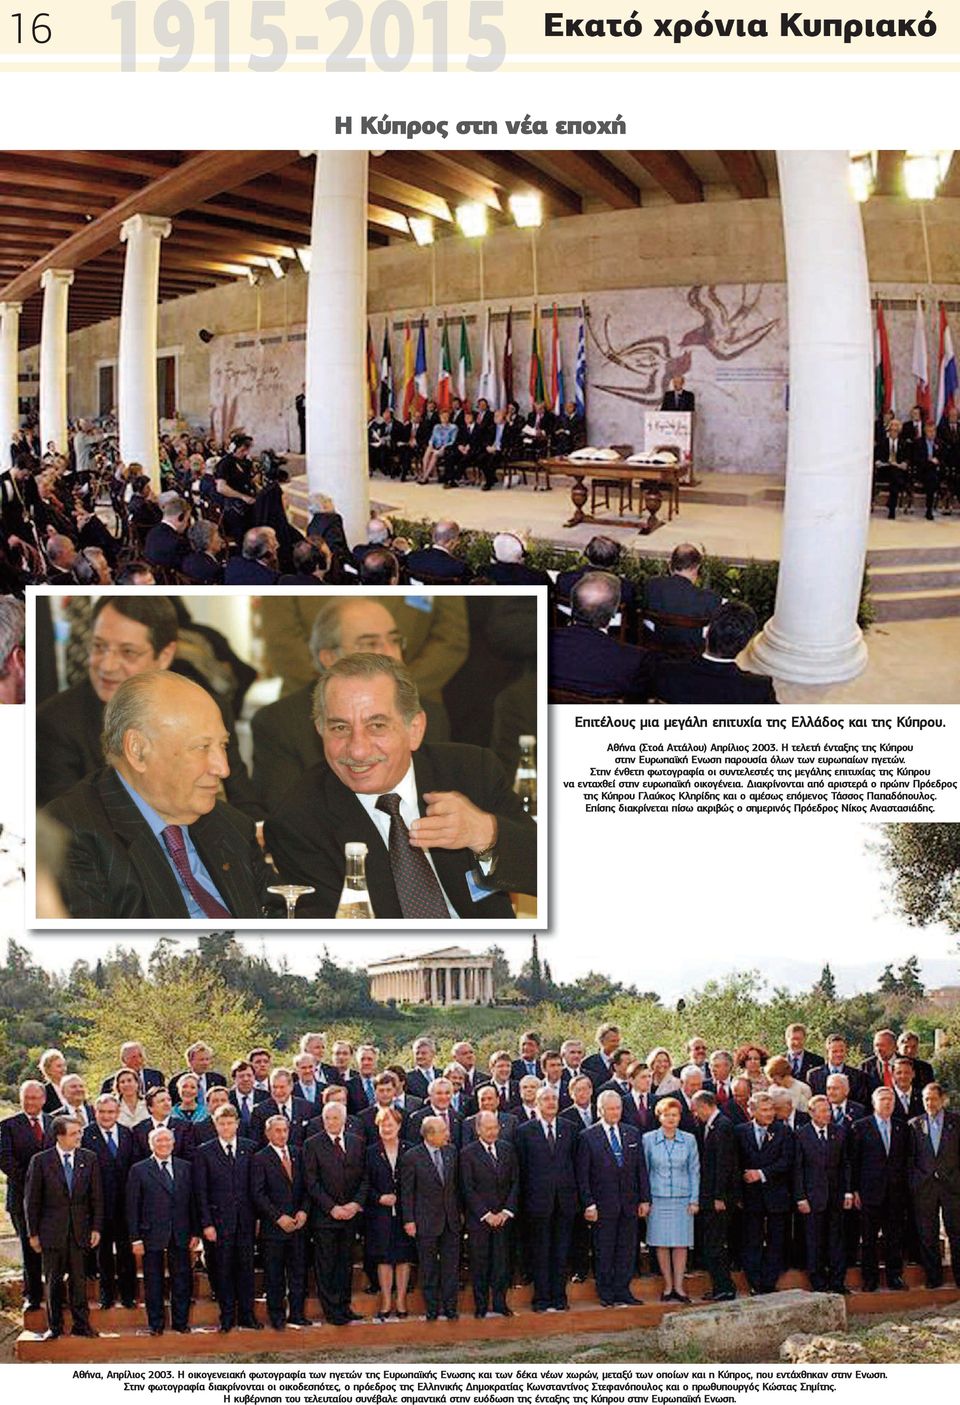 Διακρίνονται από αριστερά ο πρώην Πρόεδρος της Κύπρου Γλαύκος Κληρίδης και ο αμέσως επόμενος Τάσσος Παπαδόπουλος. Επίσης διακρίνεται πίσω ακριβώς ο σημερινός Πρόεδρος Νίκος Αναστασιάδης.